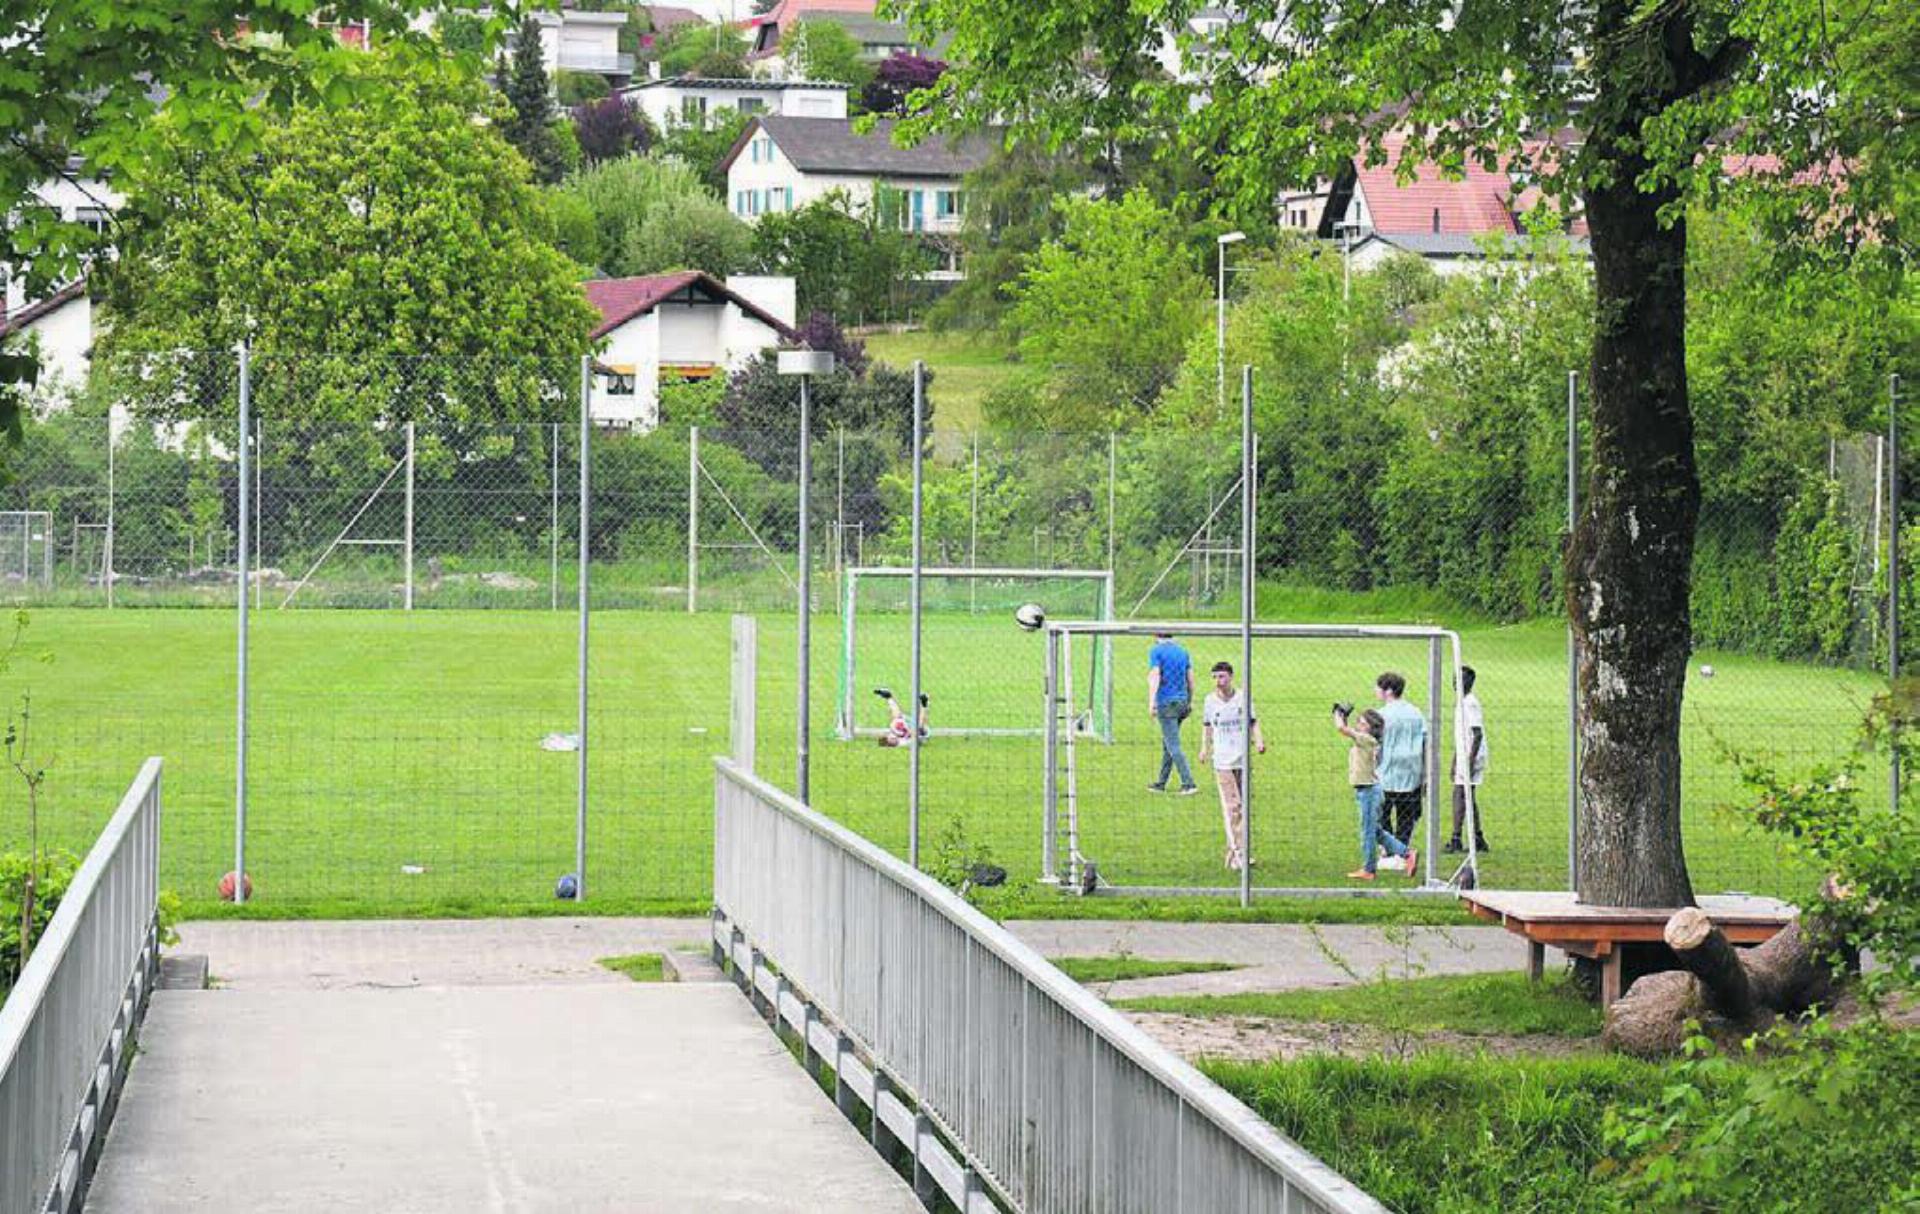 Geht es nach dem Gemeinderat, kommt ein neues Zyklus-1-Schulhaus beim Junkholz auf die jetzige grüne Spielwiese. Bild: Daniel Marti